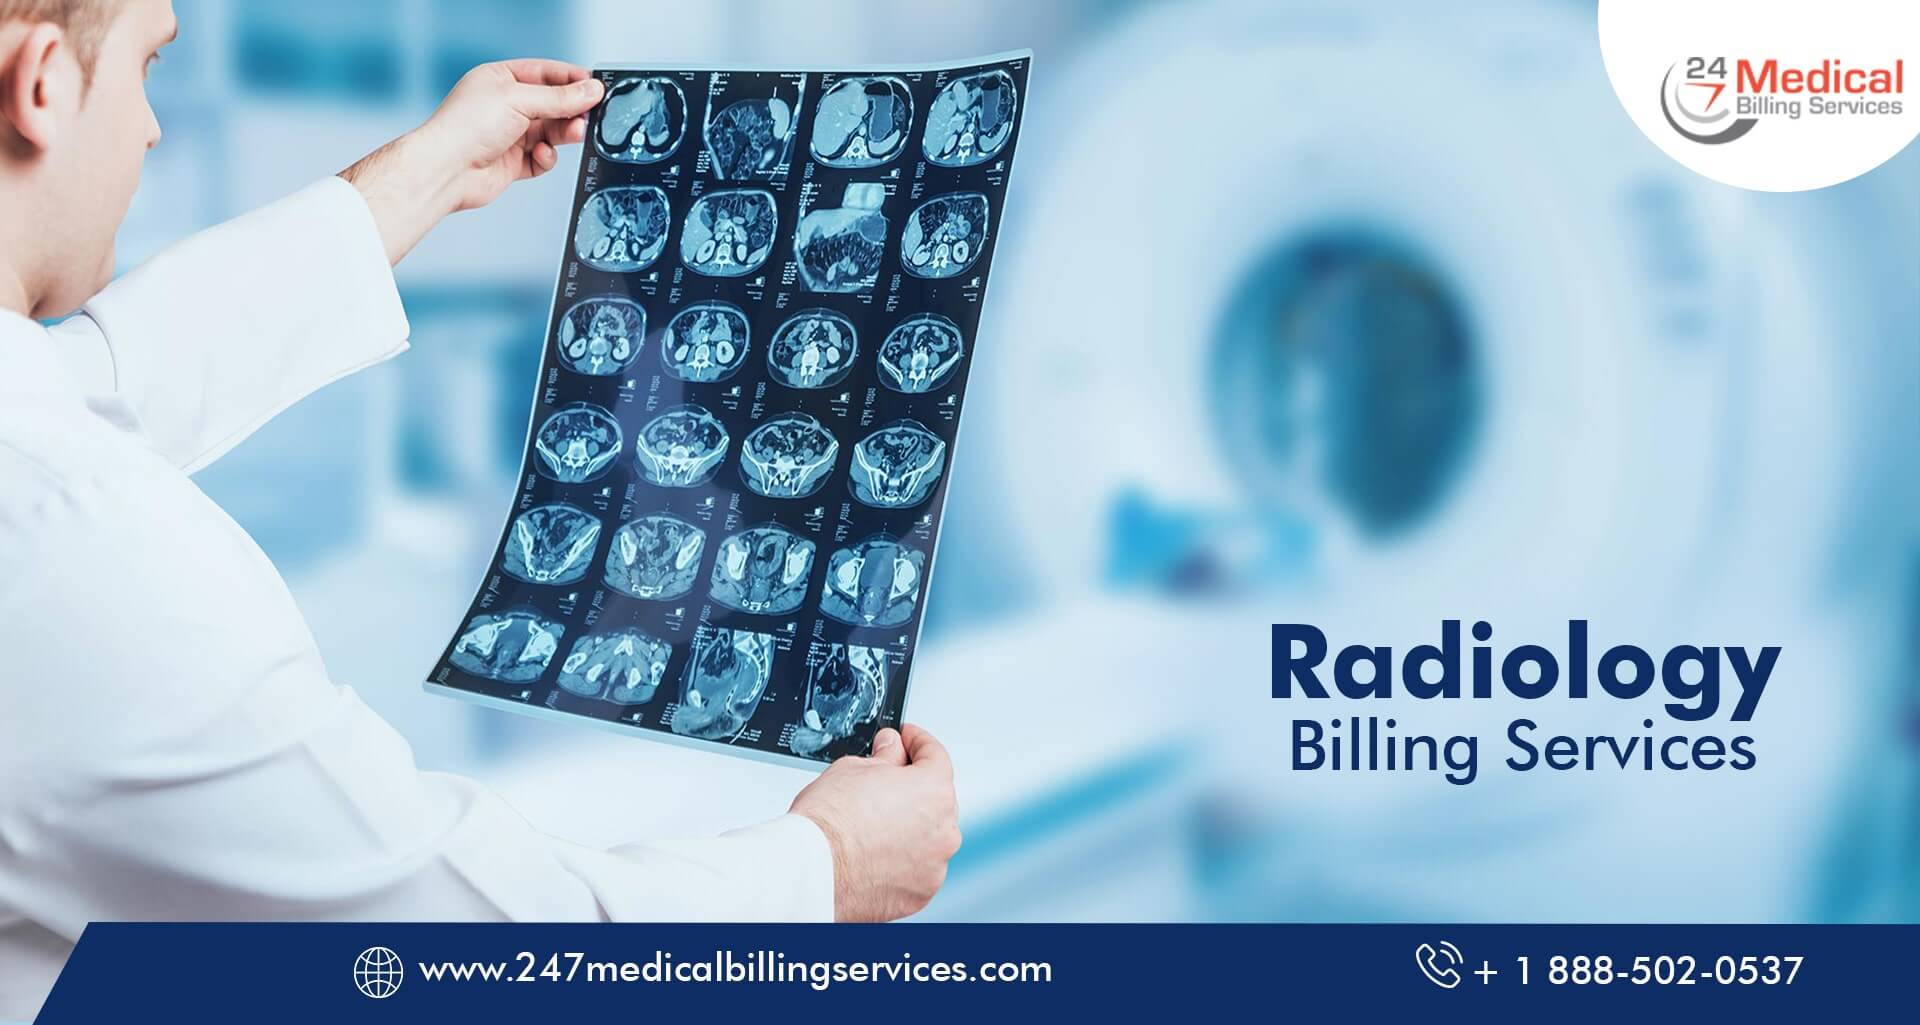  Radiology Billing Services in Denver, Colorado (CO)